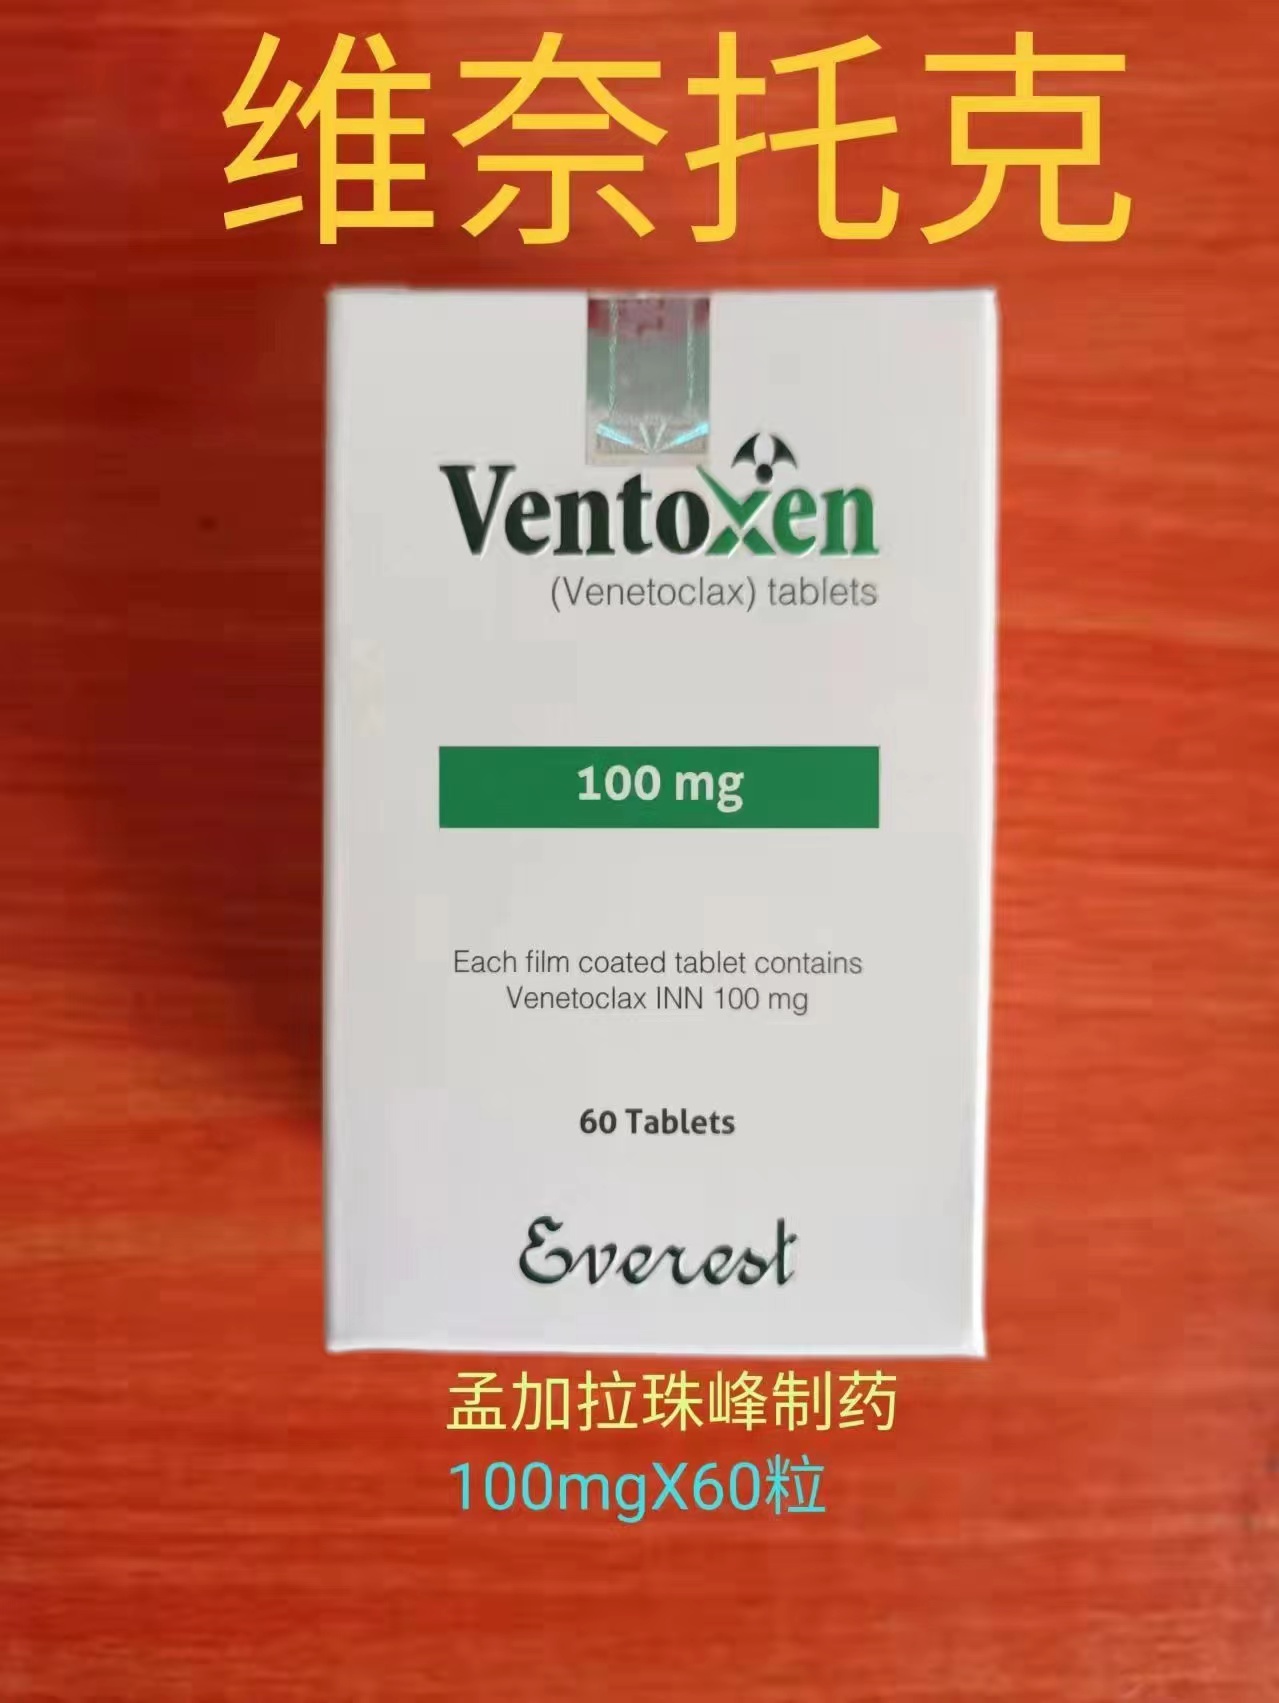 维奈克拉VENETOCLAX仿制药价格便宜的原因